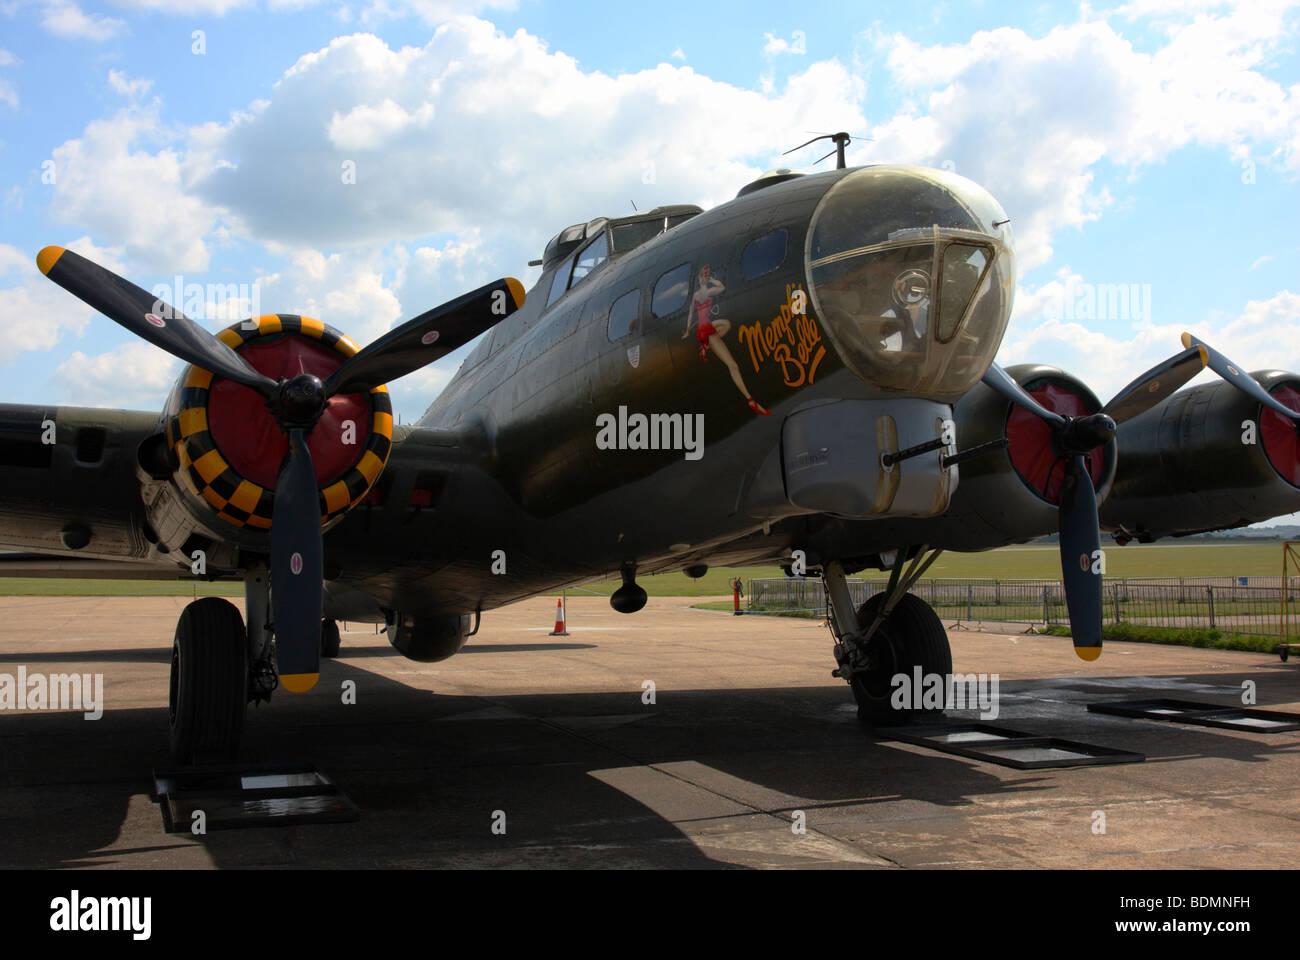 El boeing b-17g fortaleza bombardero de la segunda guerra mundial.este avión fue utilizado en la película "Memphis Belle". Foto de stock